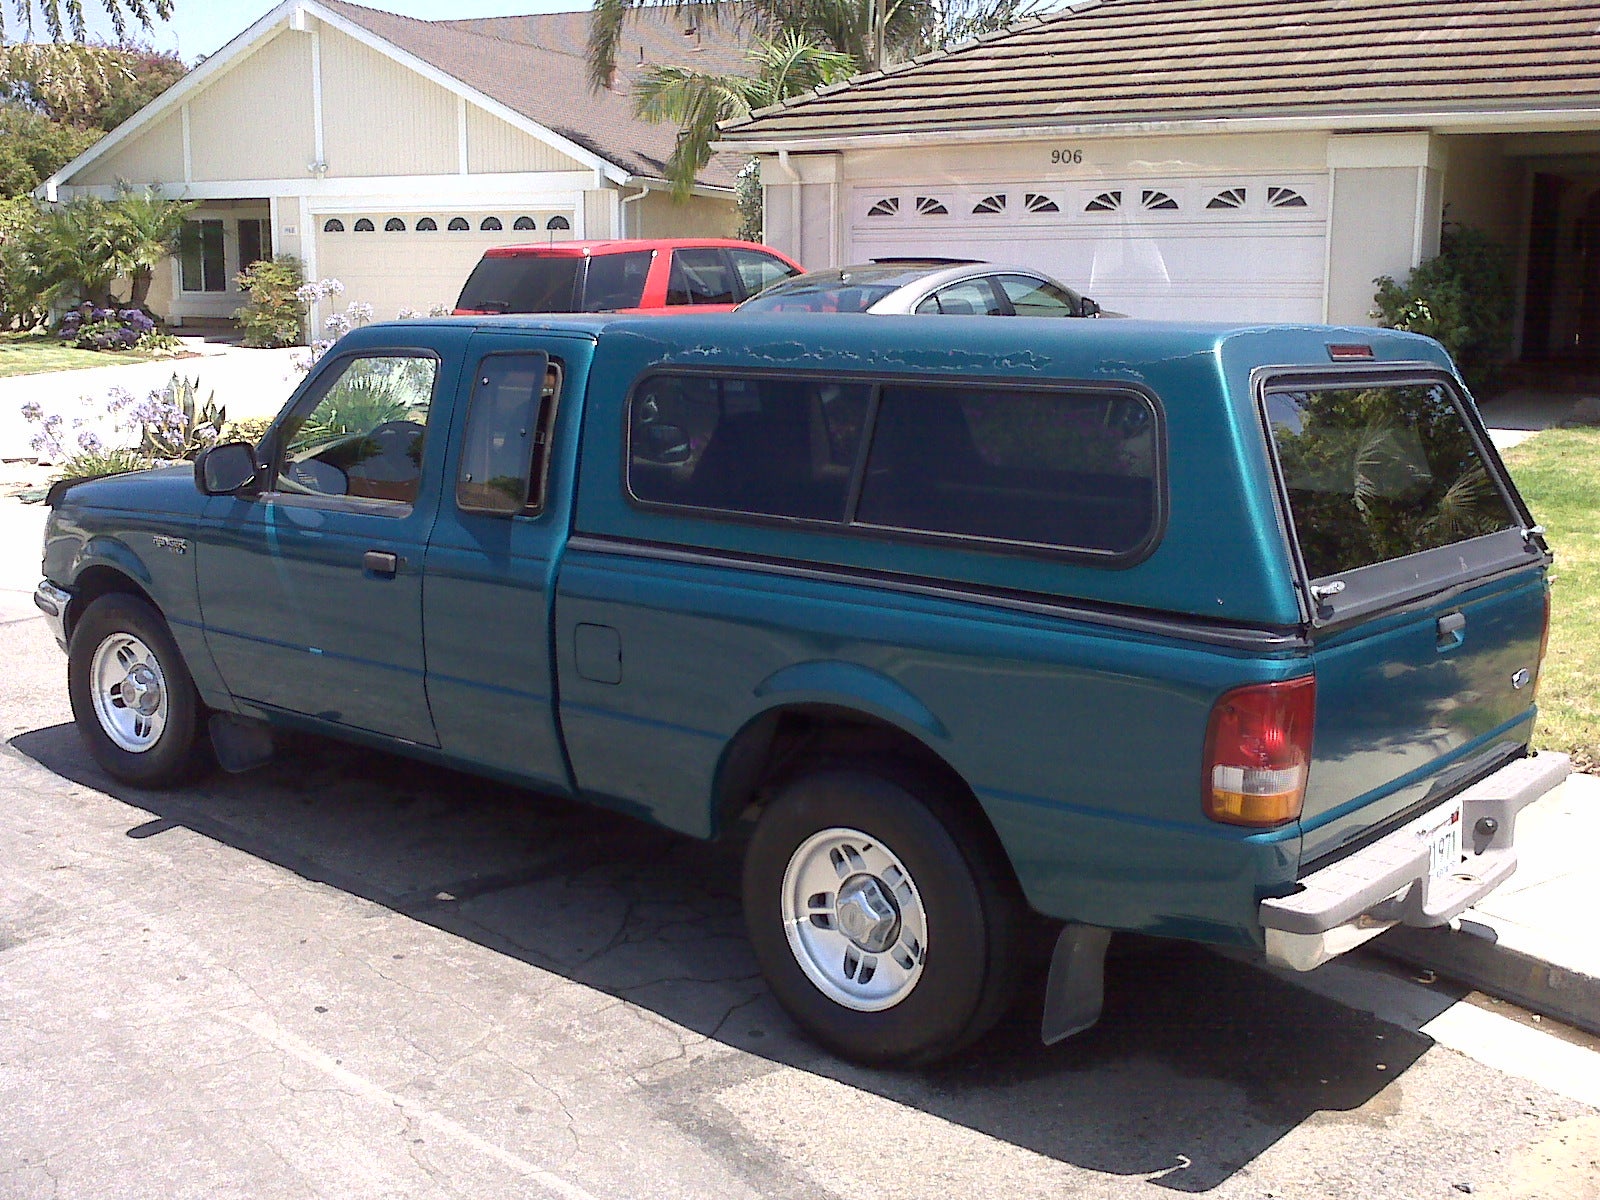 1995 Ford ranger extended cab wheelbase #1